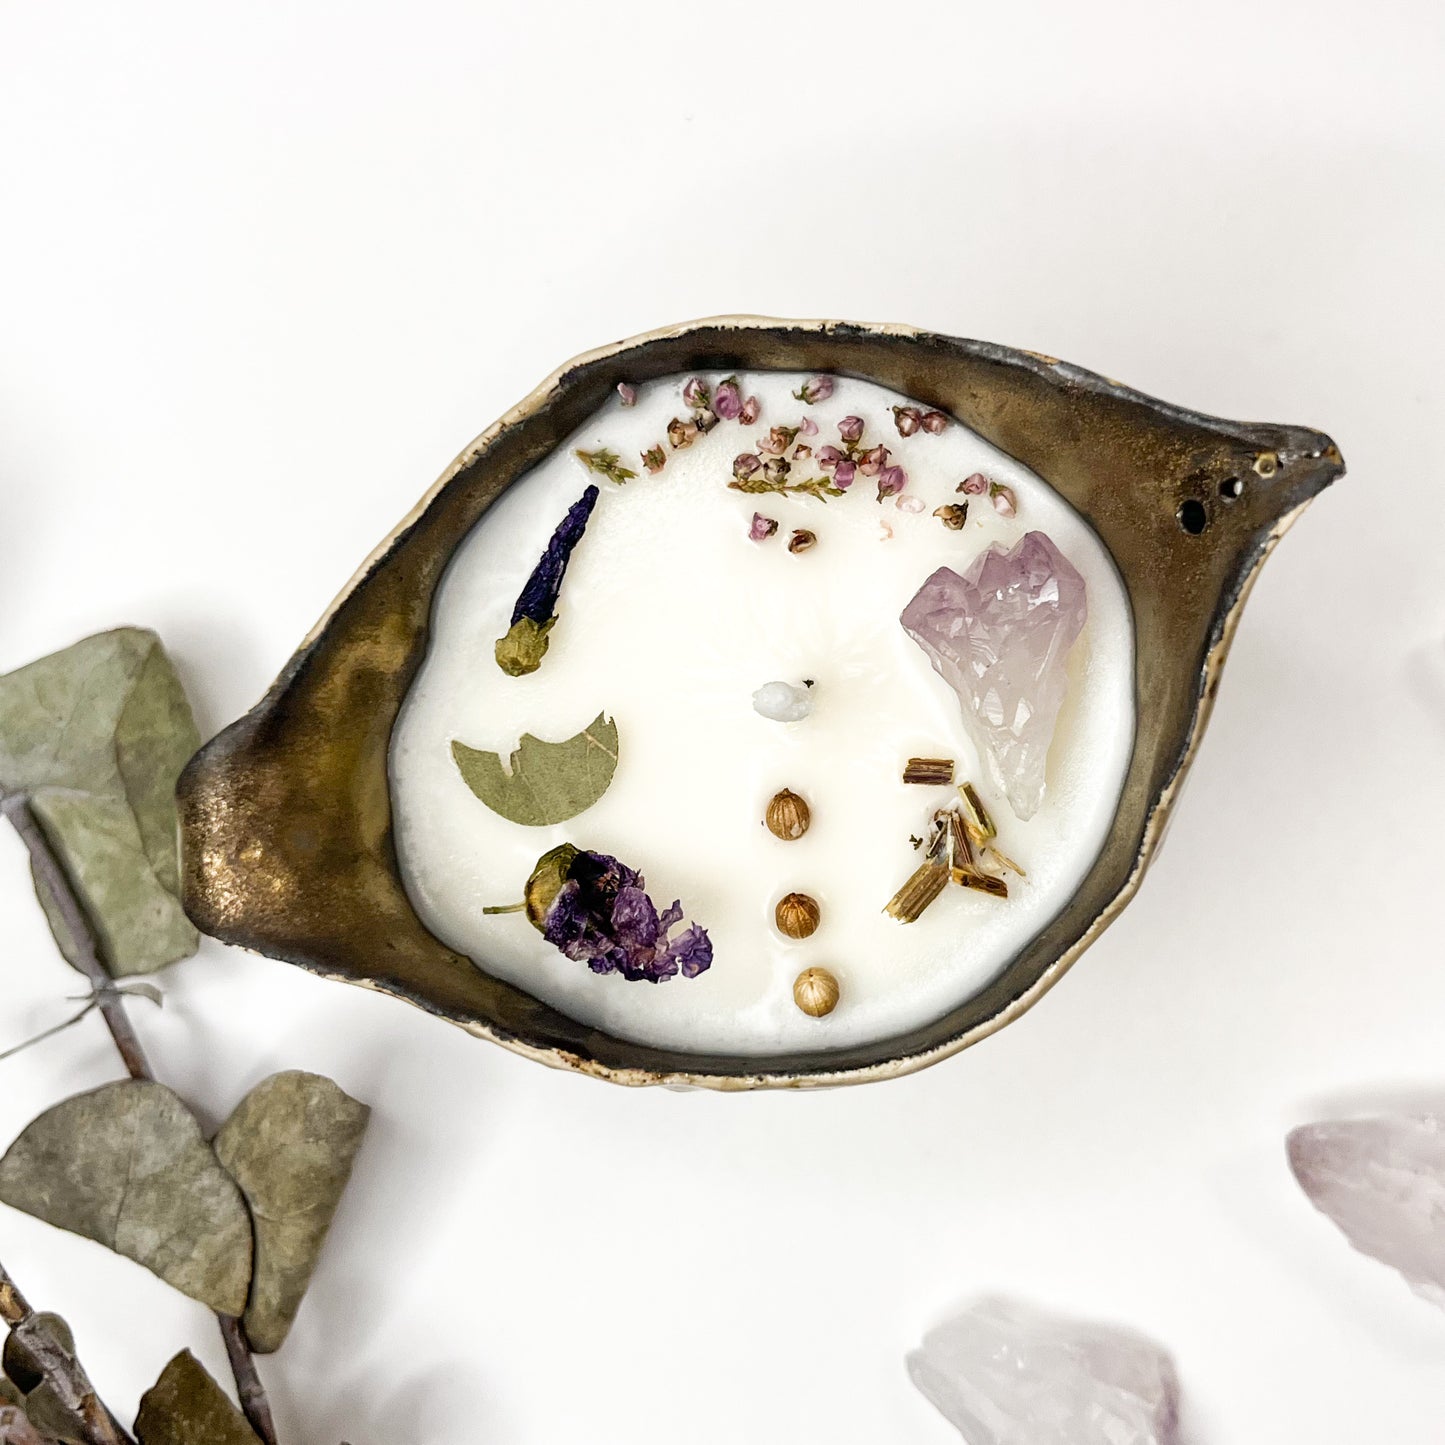 vela de cera de soja con elementos mágicos envasada en un caldero color ocre